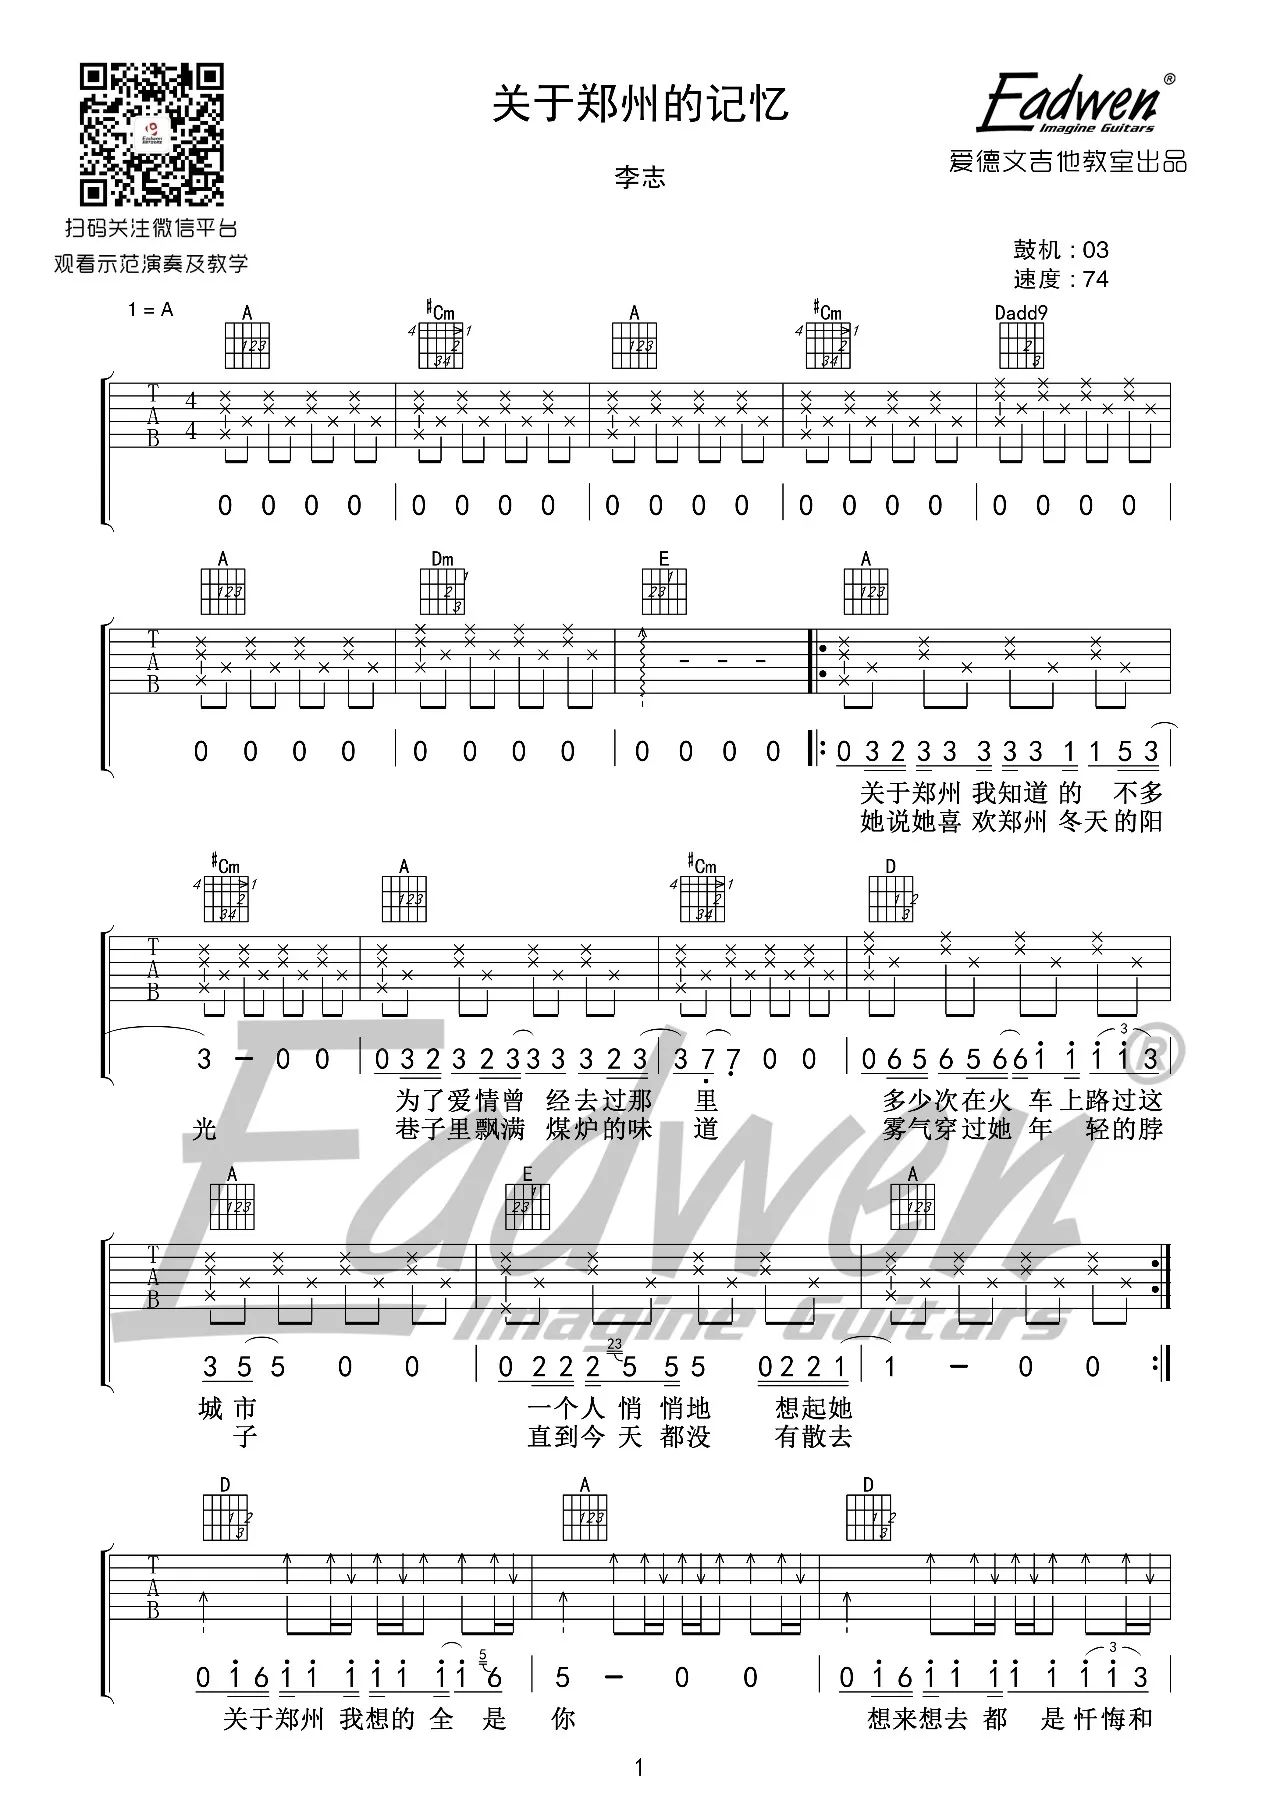 李志【关于郑州的记忆吉他谱】_在线免费打印下载-爱弹琴乐谱网